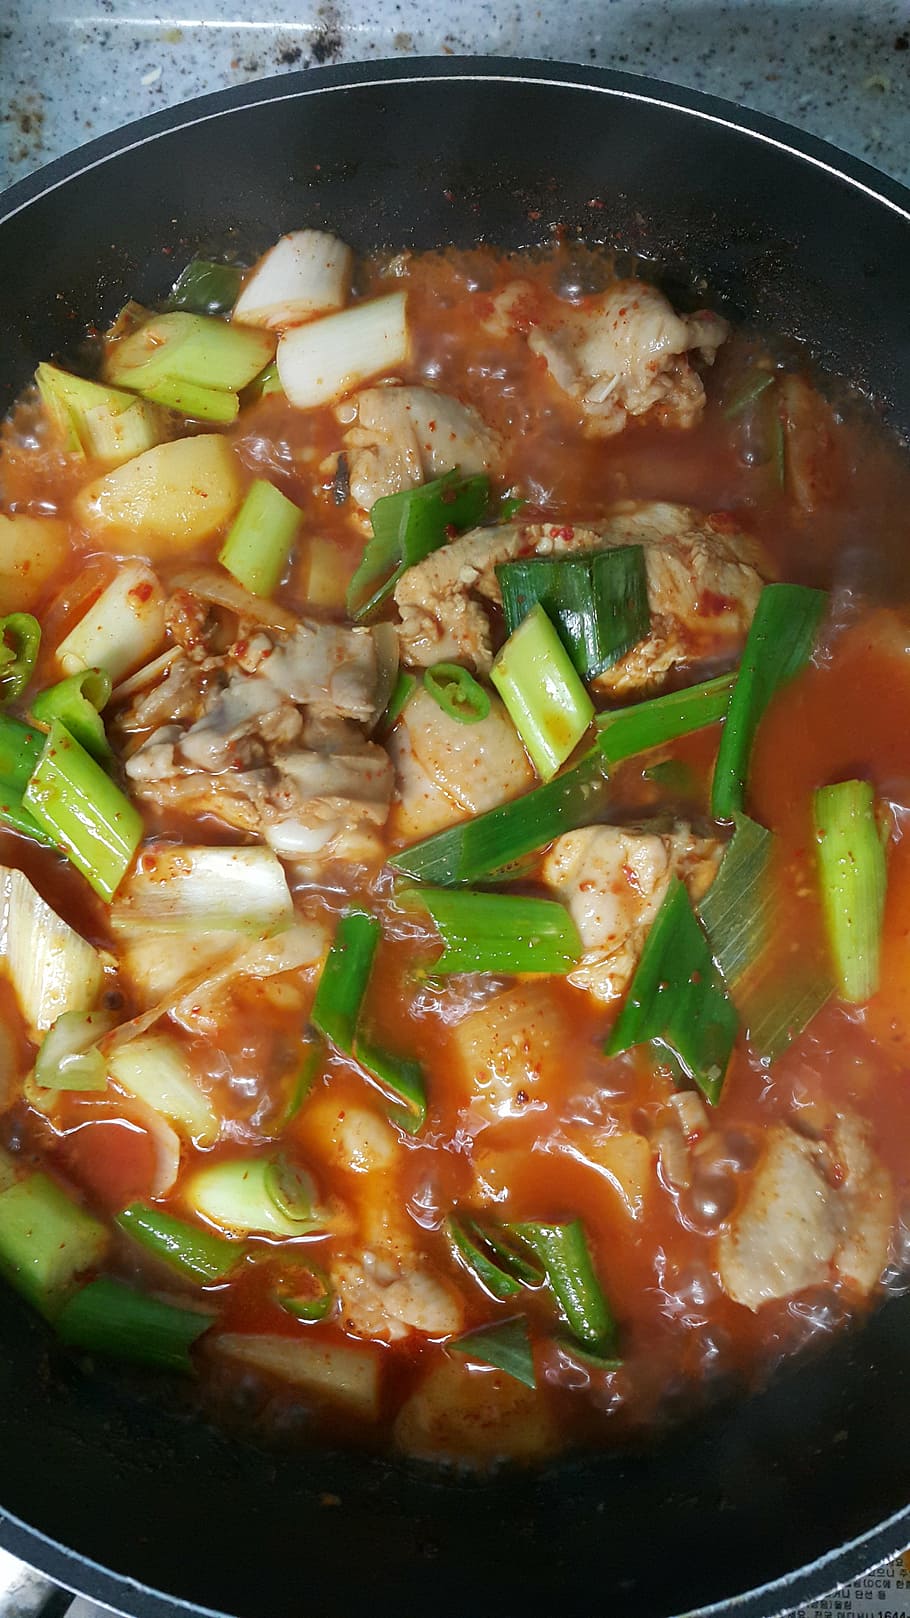 kimchi se adhieren a, comida, comedor, alimentos y bebidas, alimentos, vegetales, alimentos en el interior, alimentación saludable, equipo doméstico, utensilios de cocina